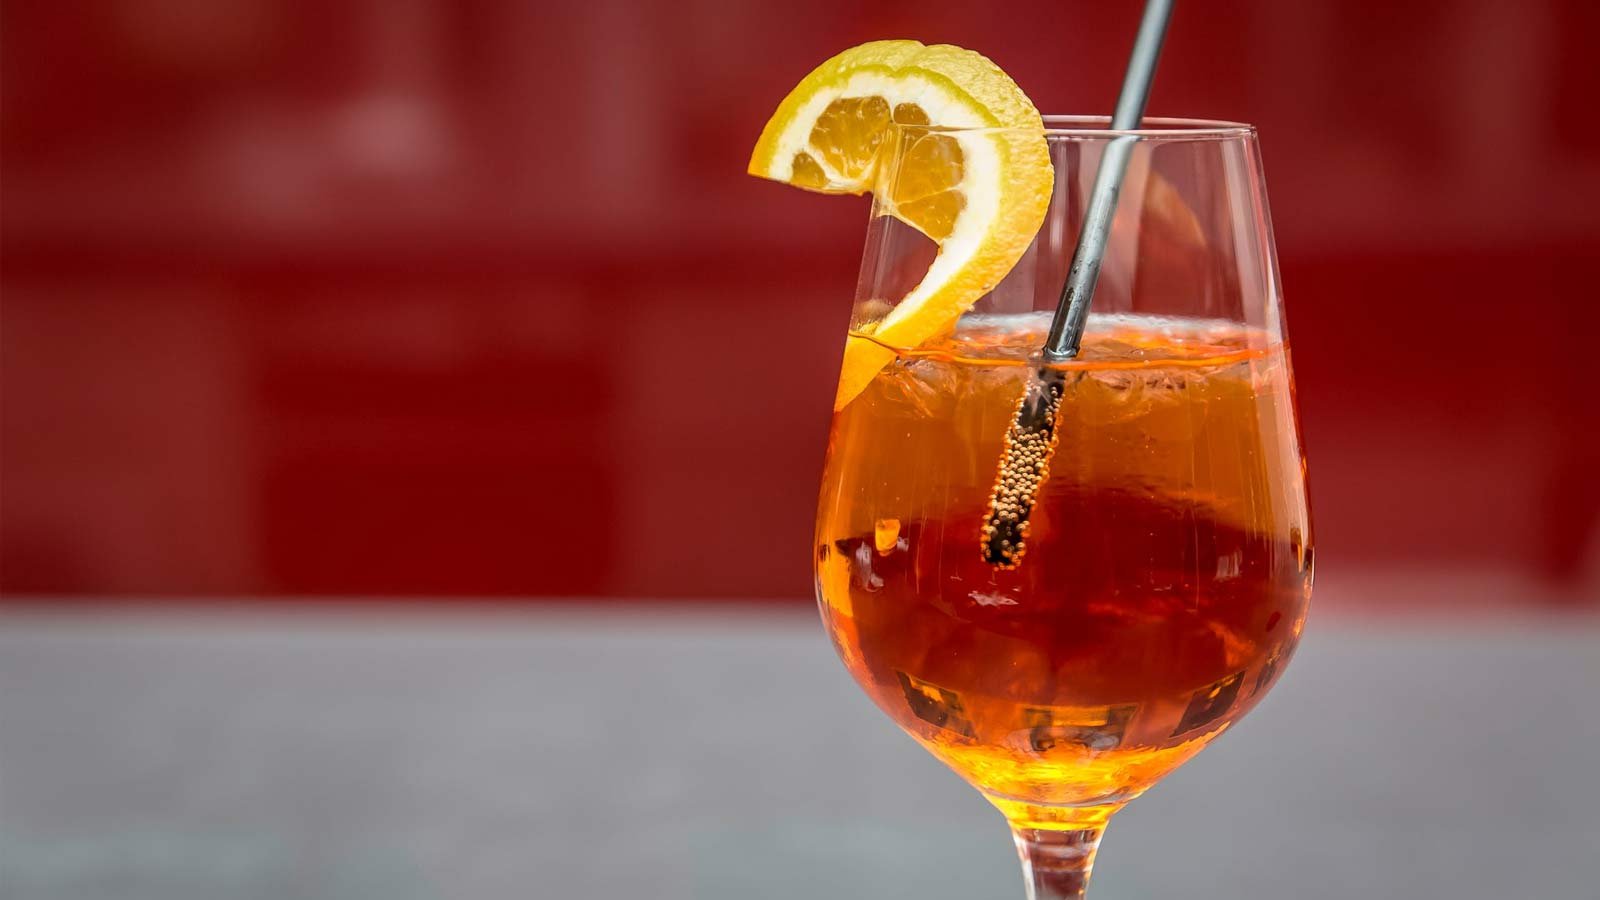 Cocktail in glass with orange garnish